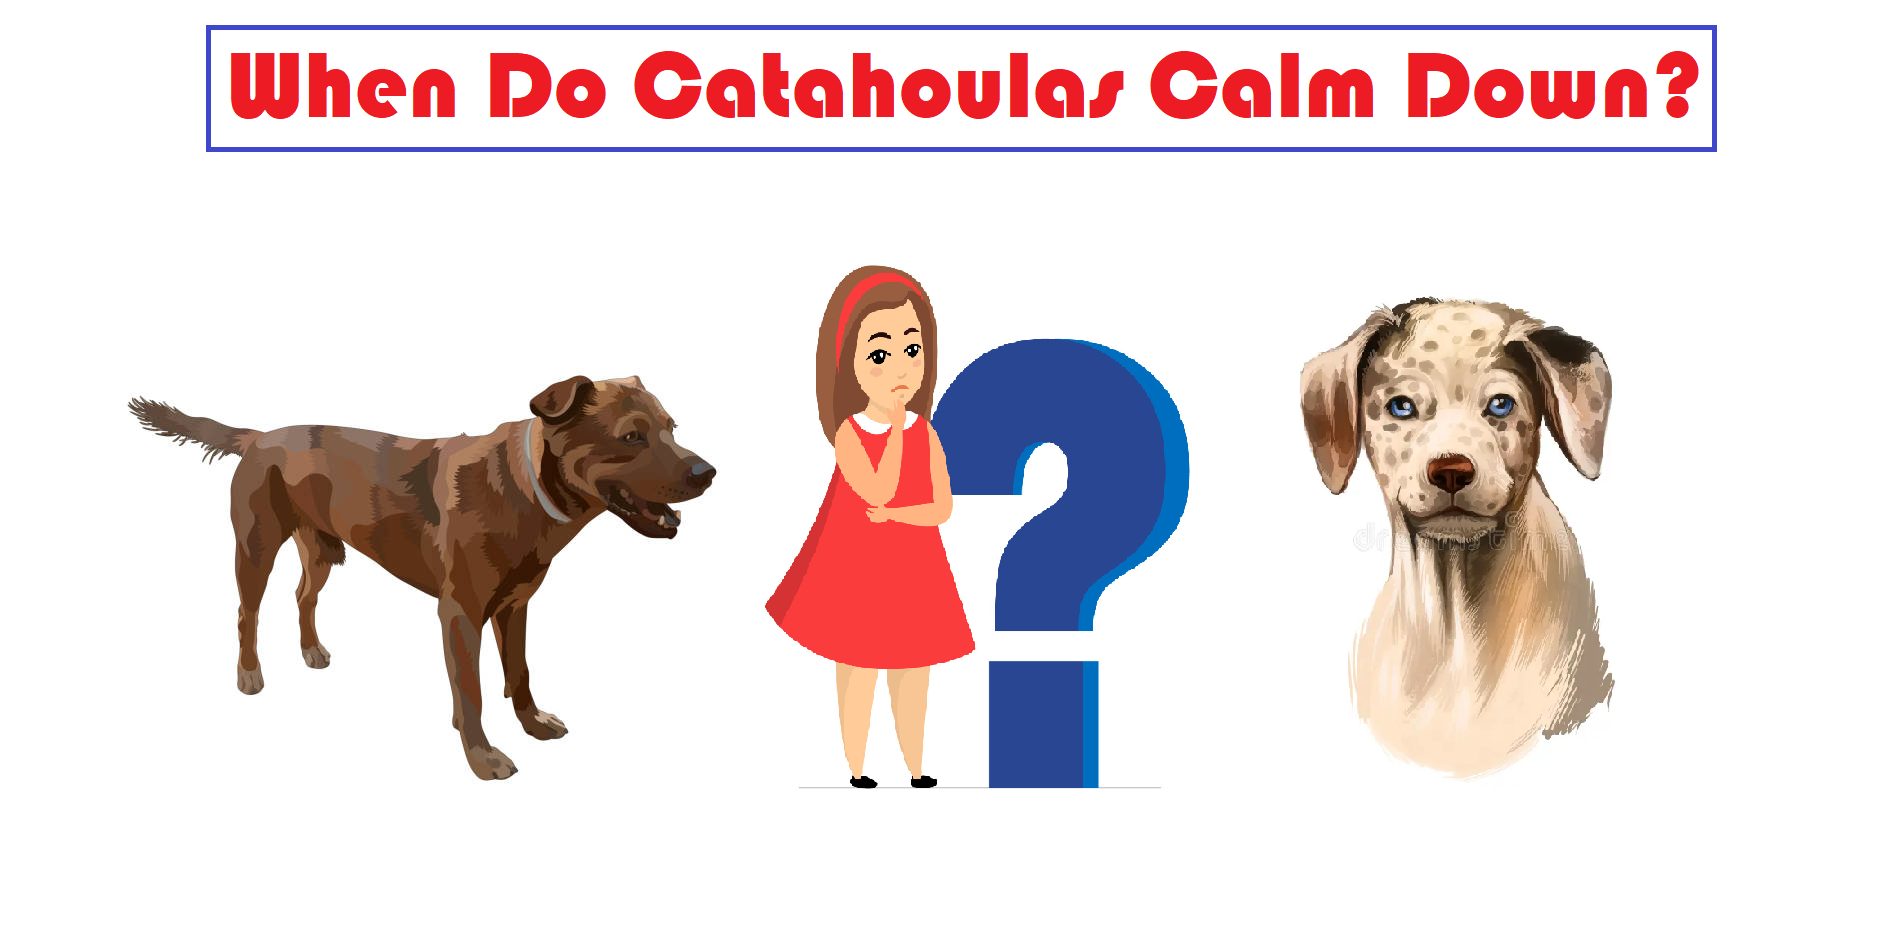 When Do Catahoulas Calm Down?